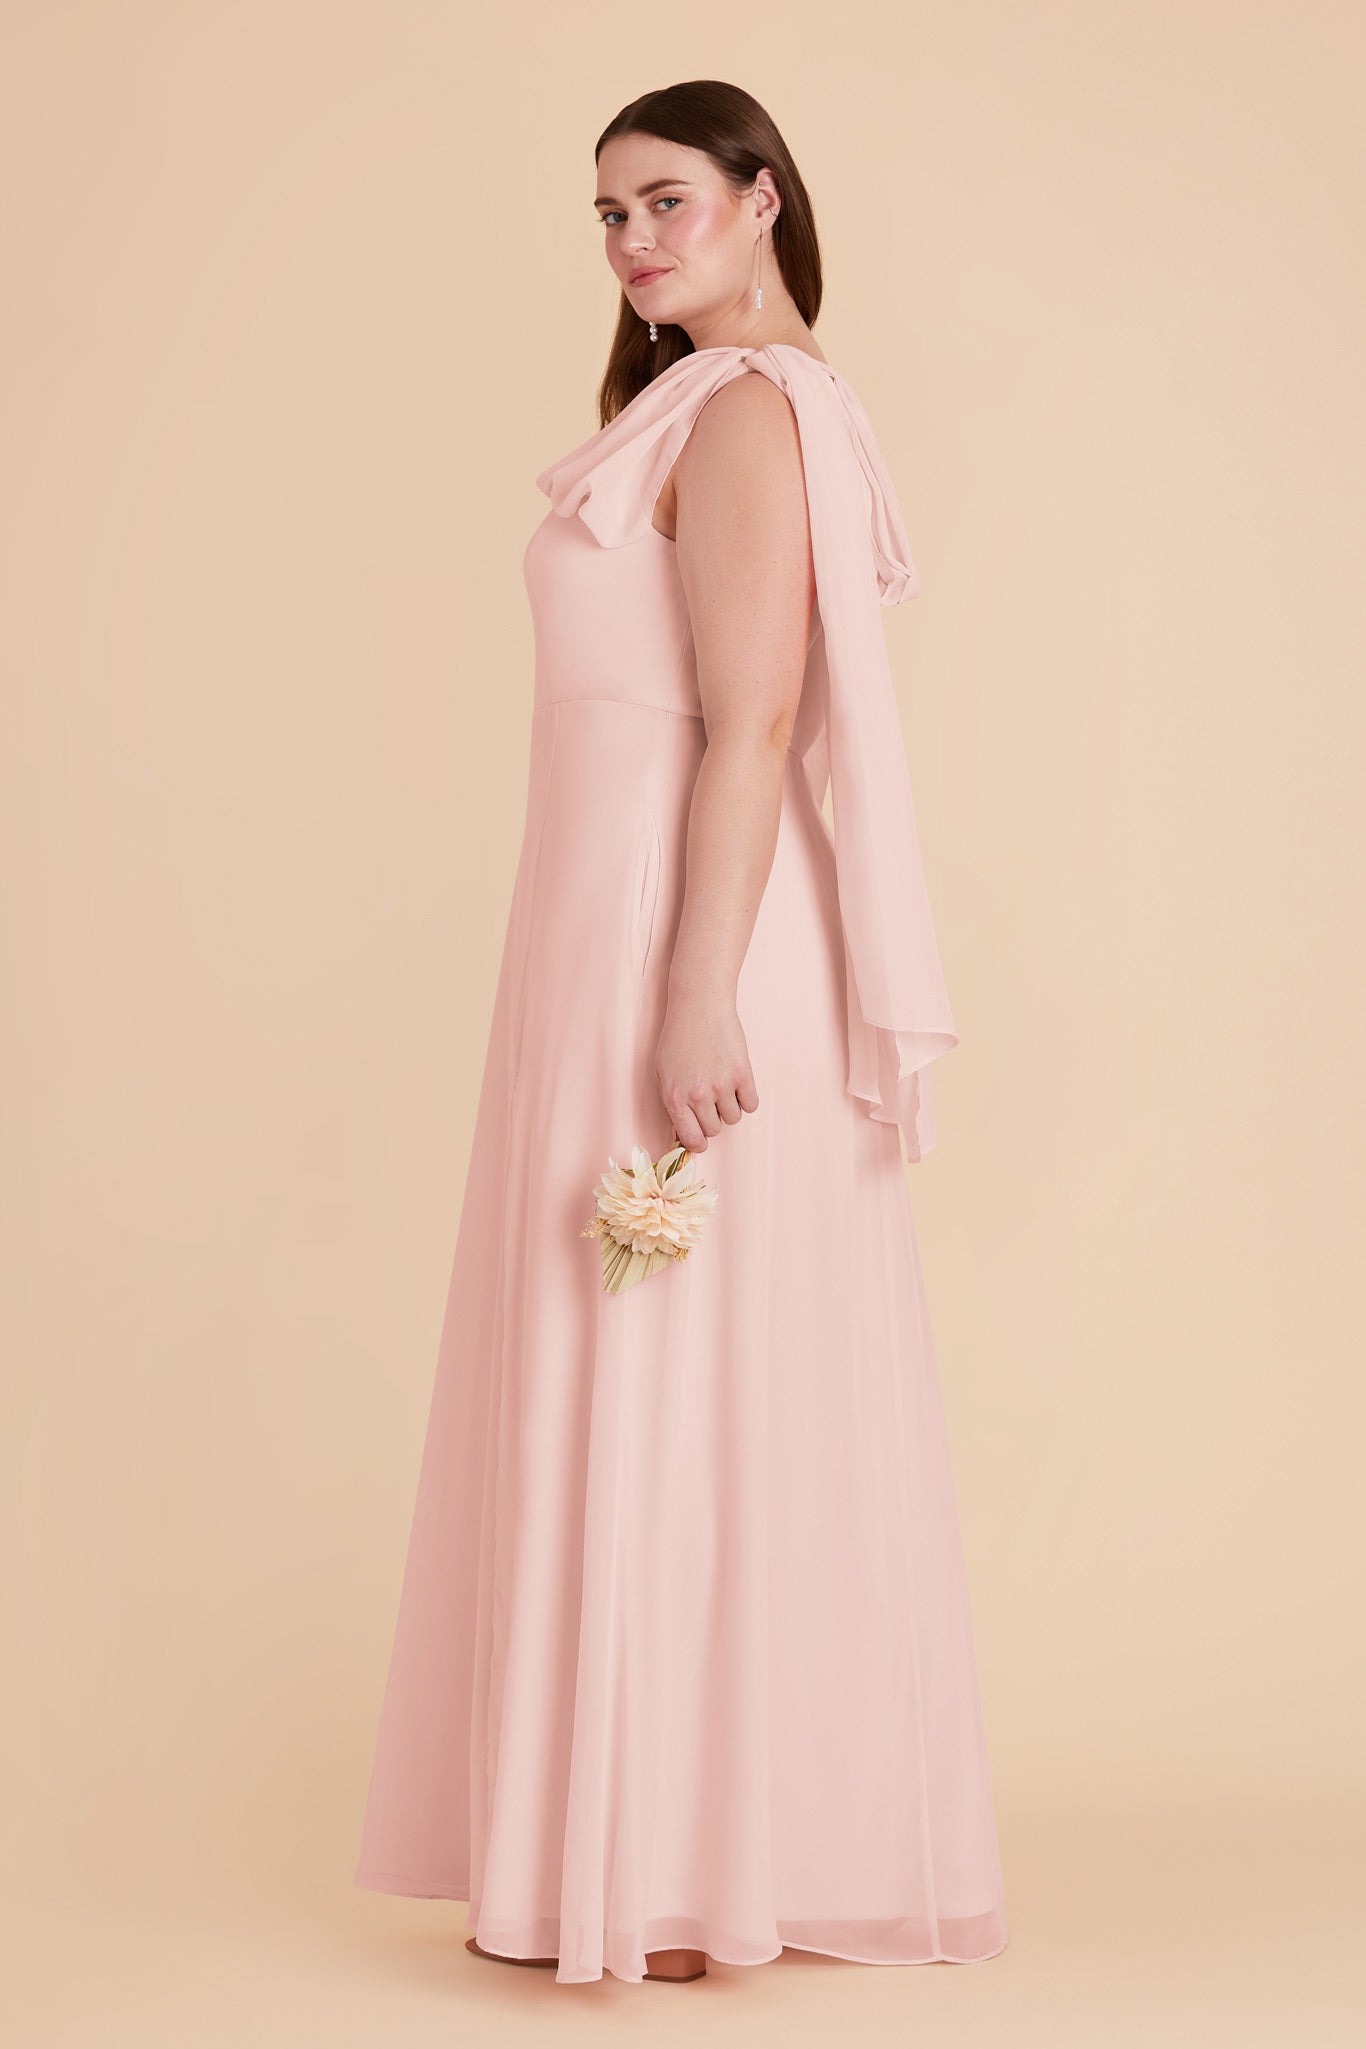 Blush Pink Melissa Chiffon Dress by Birdy Grey